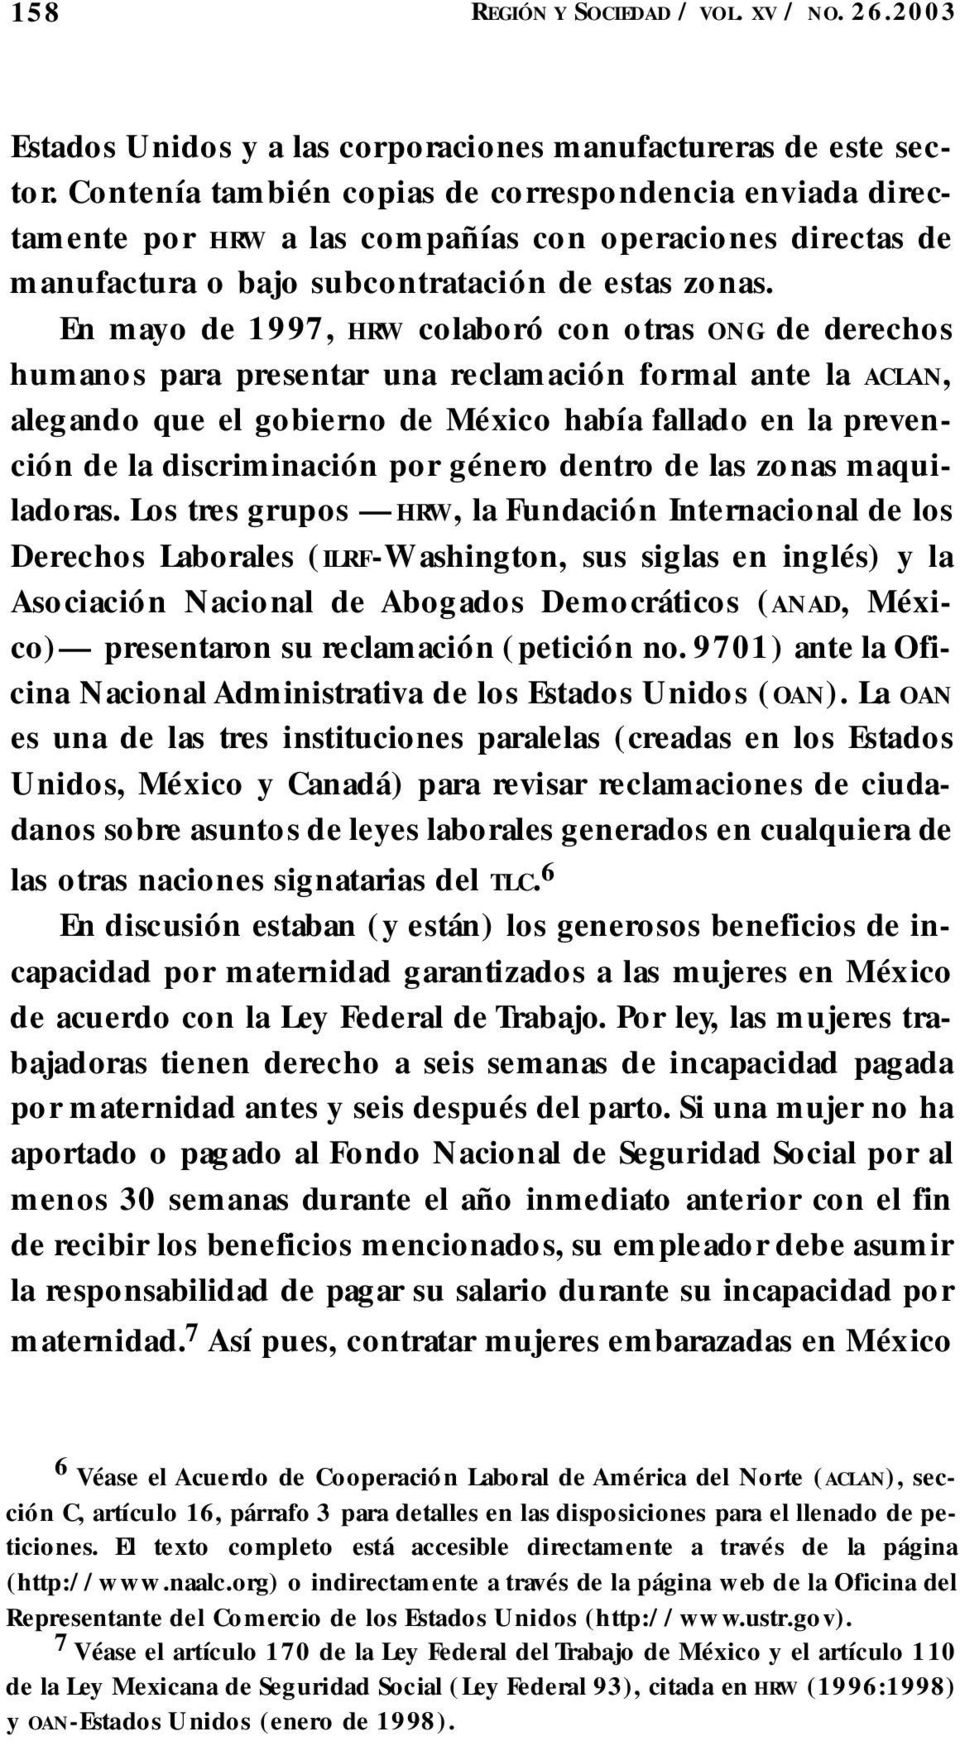 En mayo de 1997, H RW c o l aboró con otras O N G de dere ch o s humanos para presentar una reclamación fo rmal ante la AC L A N, alegando que el gobierno de México había fallado en la preve n- ción